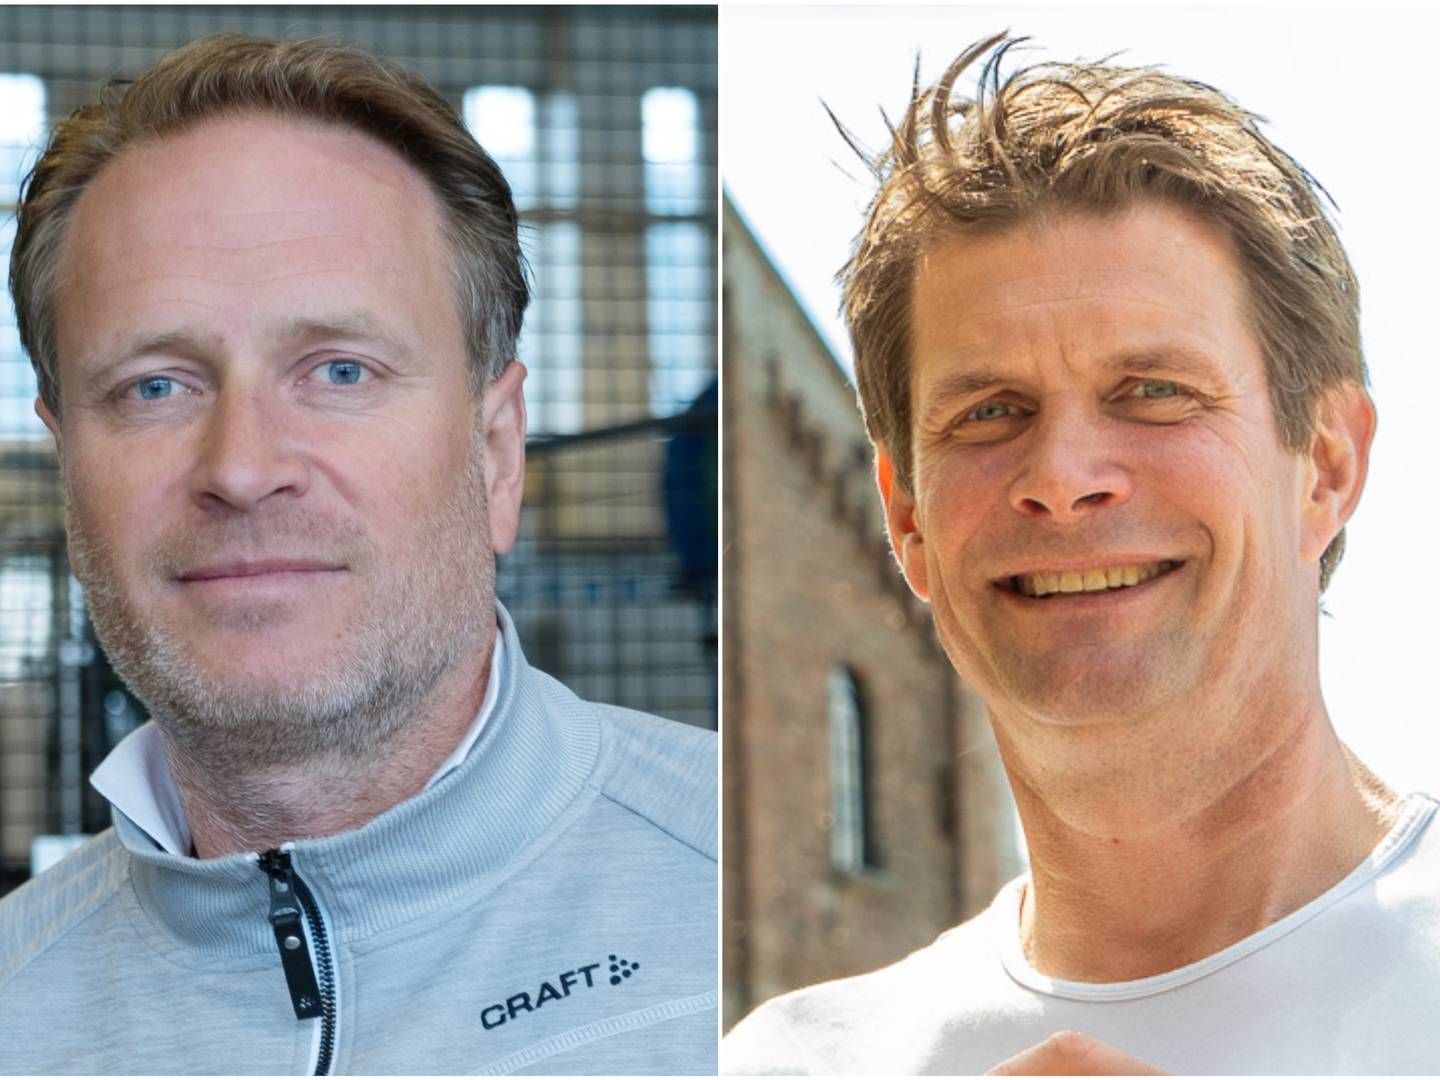 Administrerende direktør i Aass bryggeri, Christian Aass (til venstre), og pressetalsperson i Ringnes, Nicolay Bruusgaard (til høyre), er uenige om hvilken type ølfat som er best for klimaet. | Foto: Anders Hustveit Gerhardsen og Ringnes